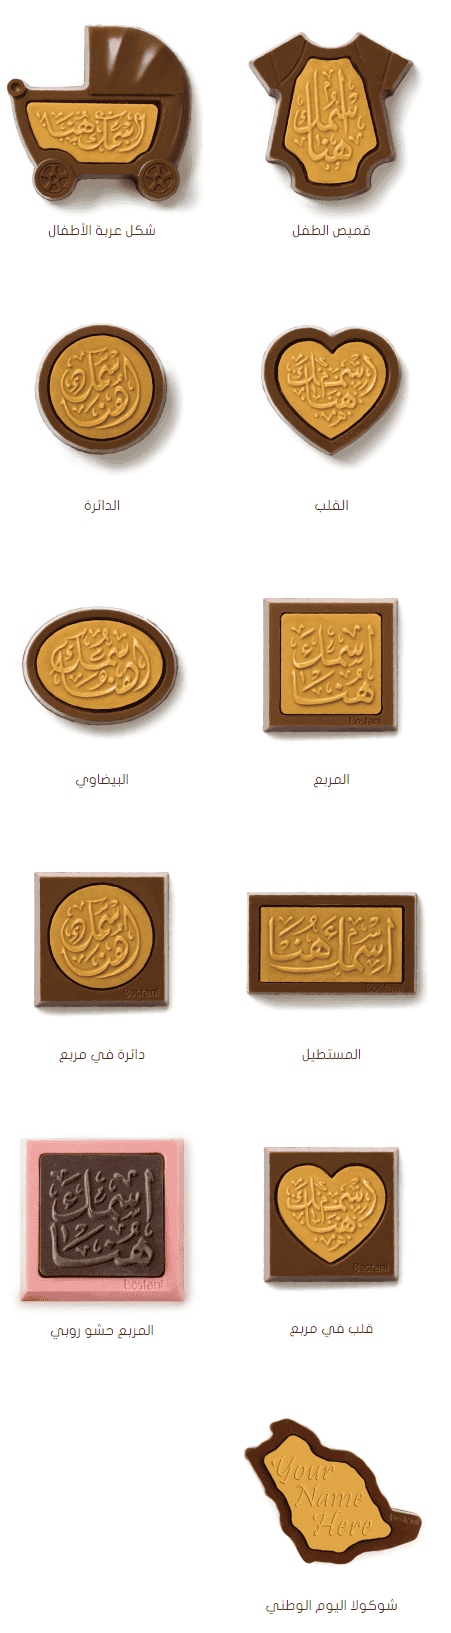 بستاني للشوكولاته والهدايا شوكولاته مخصصة بستاني شوكولاتة السعودية | منيو + فروع + اسعار